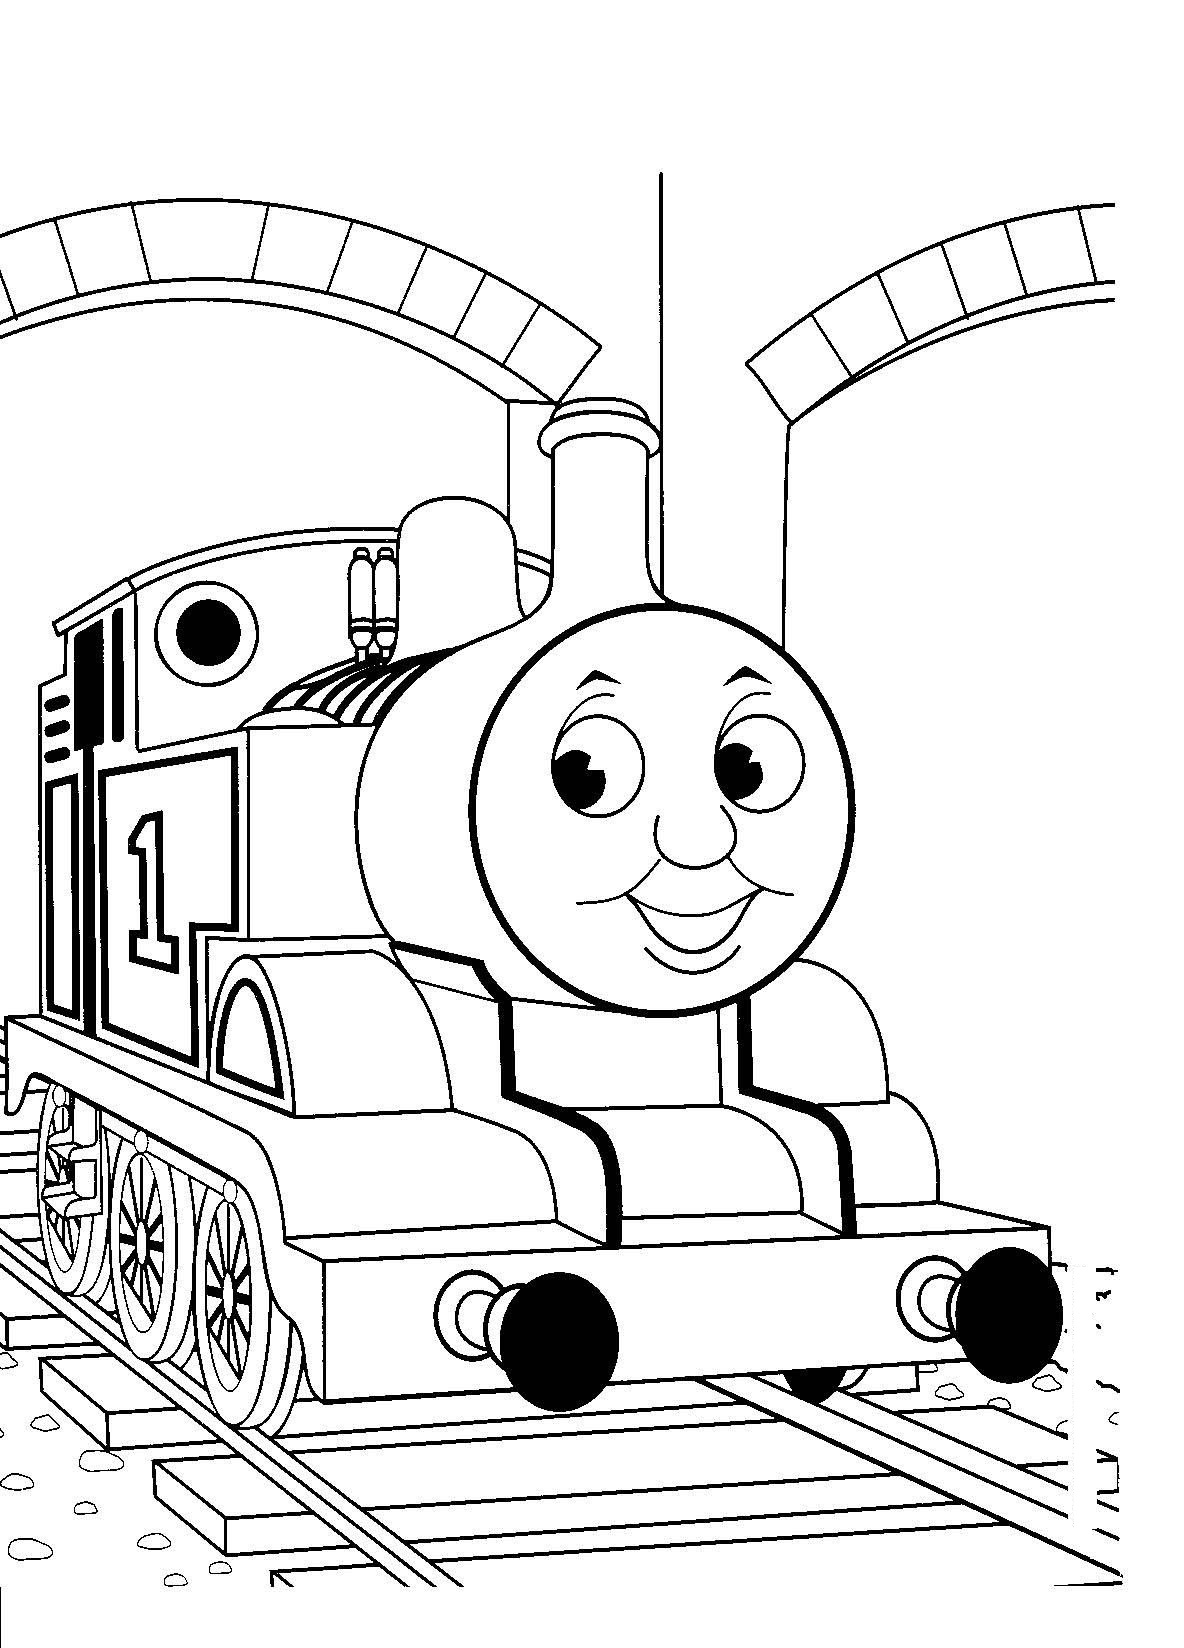 Xe lửa đơn giản để vẽ cho trẻ em